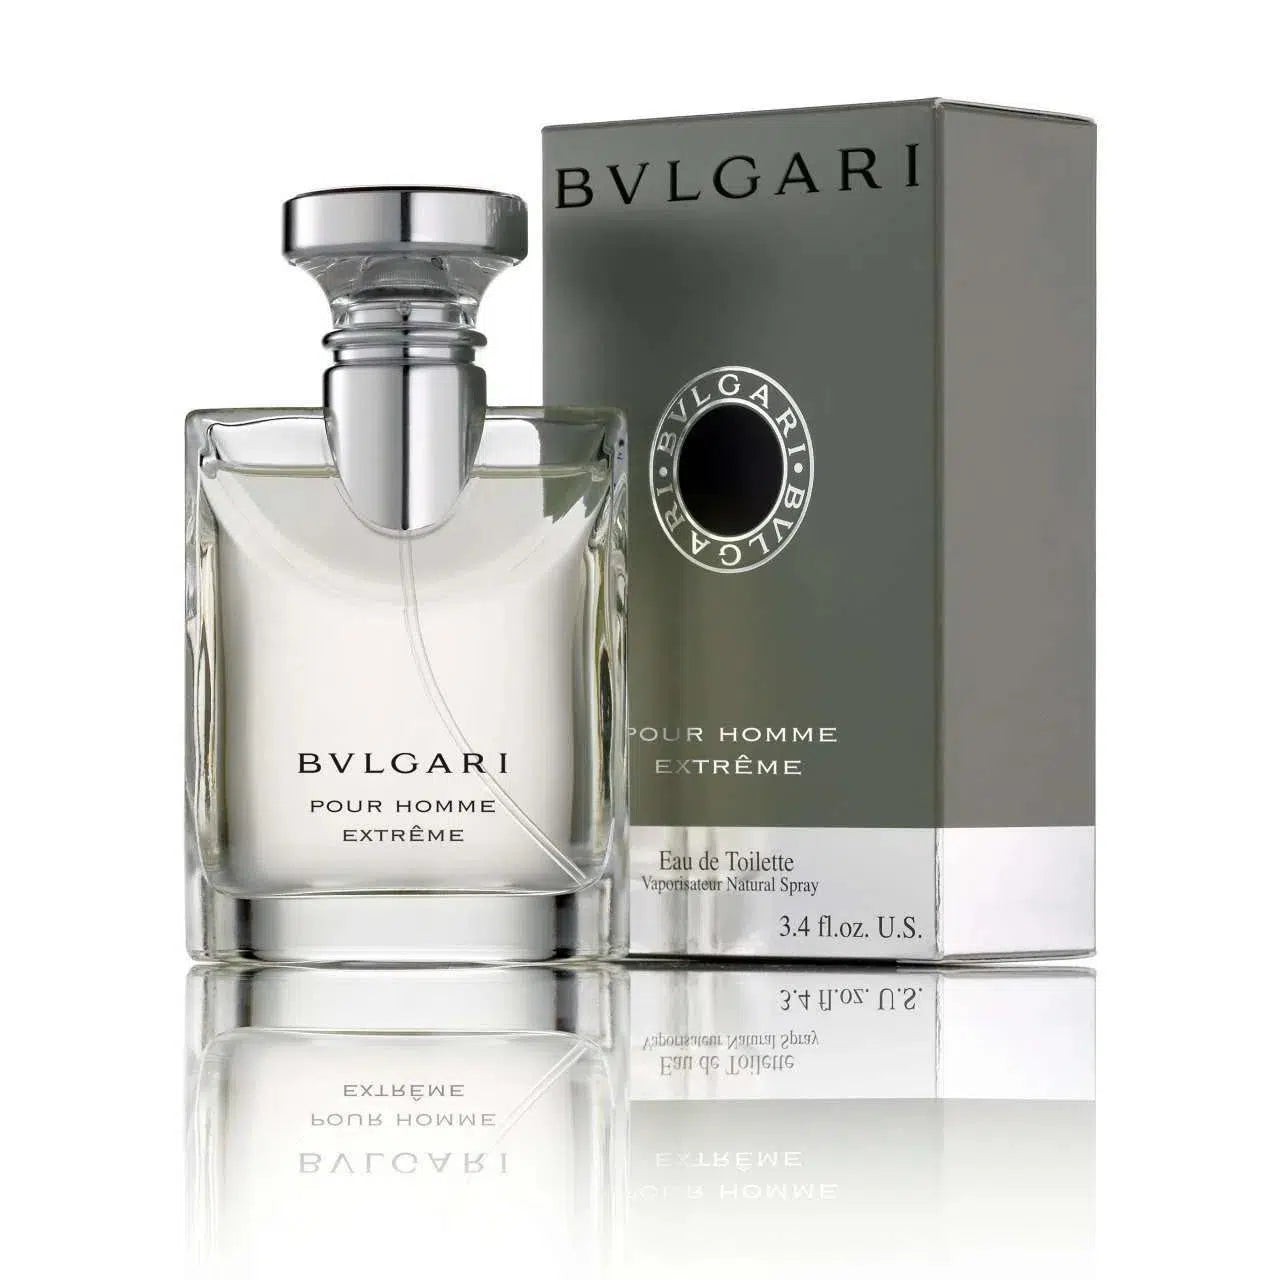 Bvlgari Extreme 100ml - Perfume Philippines